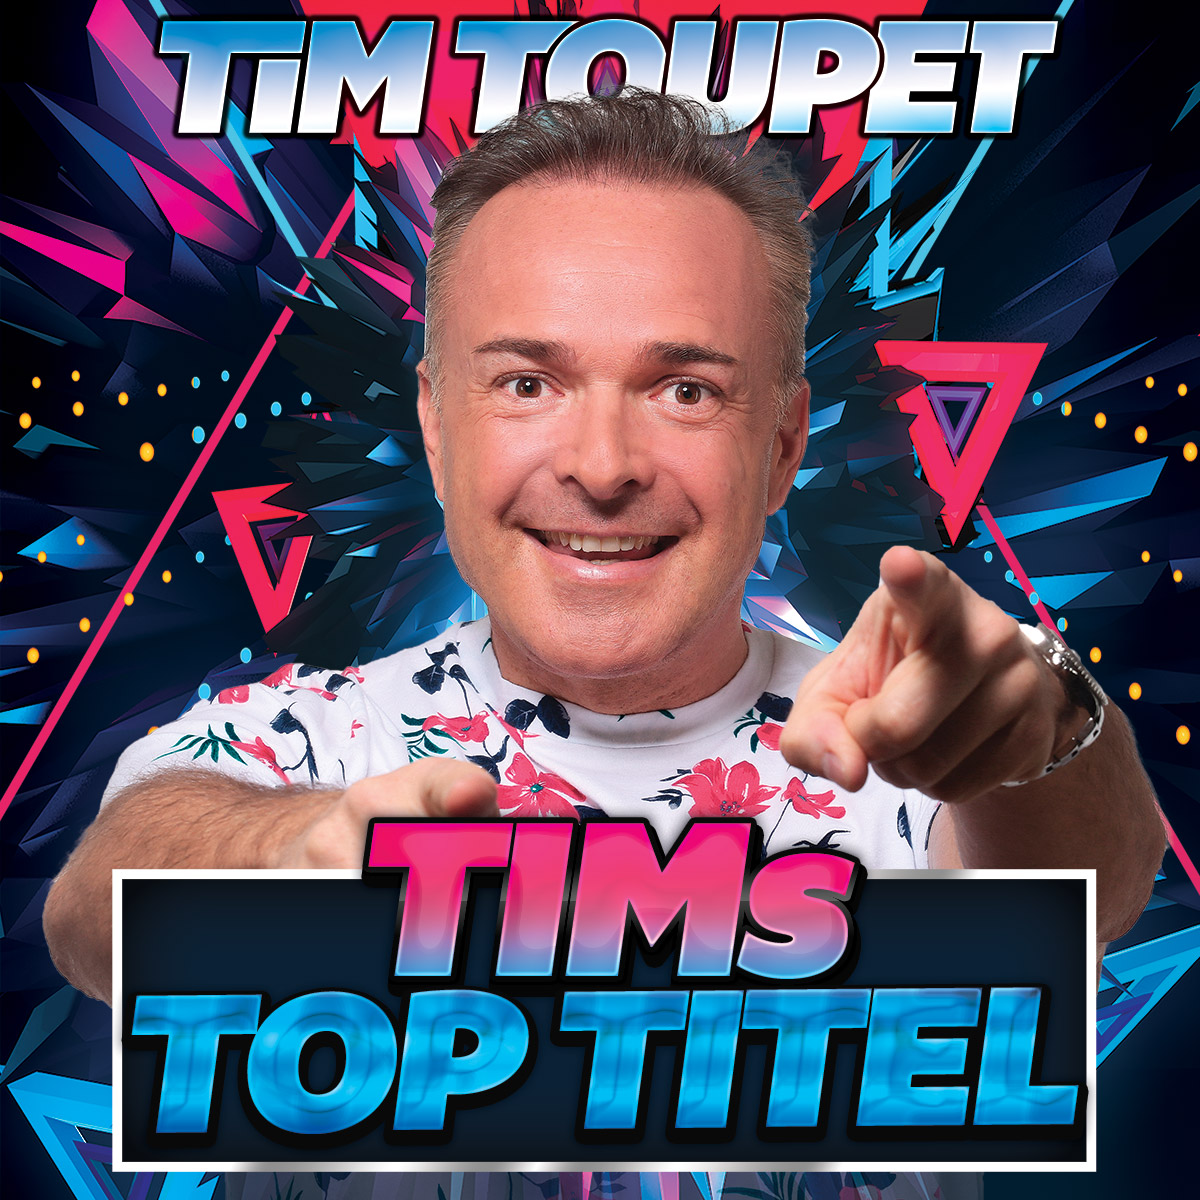 Tim Toupet - Tim's Top Titel